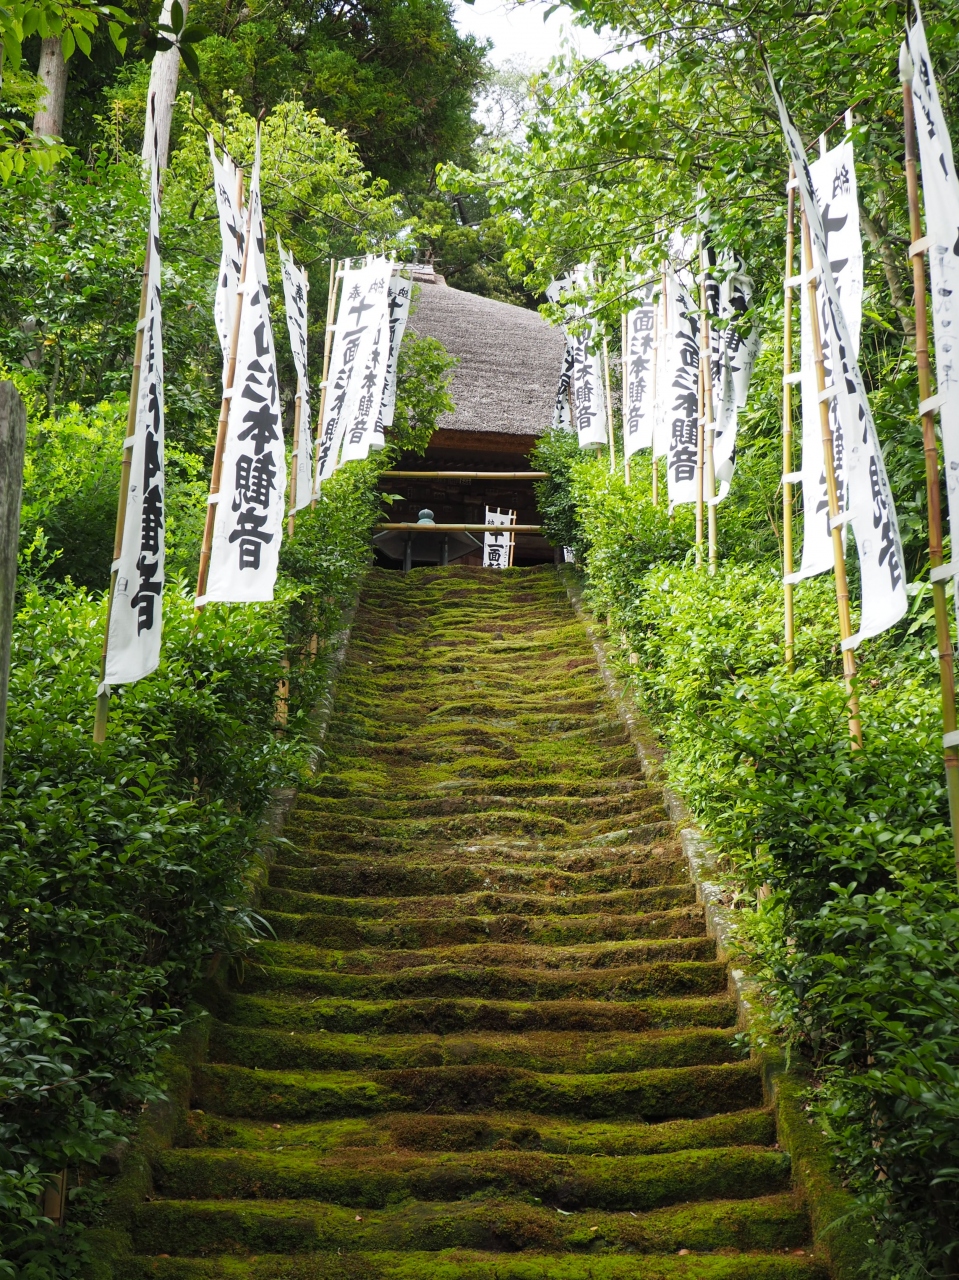 杉本寺 苔の階段が余にも美しい 鎌倉随一の古寺 上がって仏像を拝見出来る観音堂 鎌倉 神奈川県 の旅行記 ブログ By Ken Yoshimuneさん フォートラベル